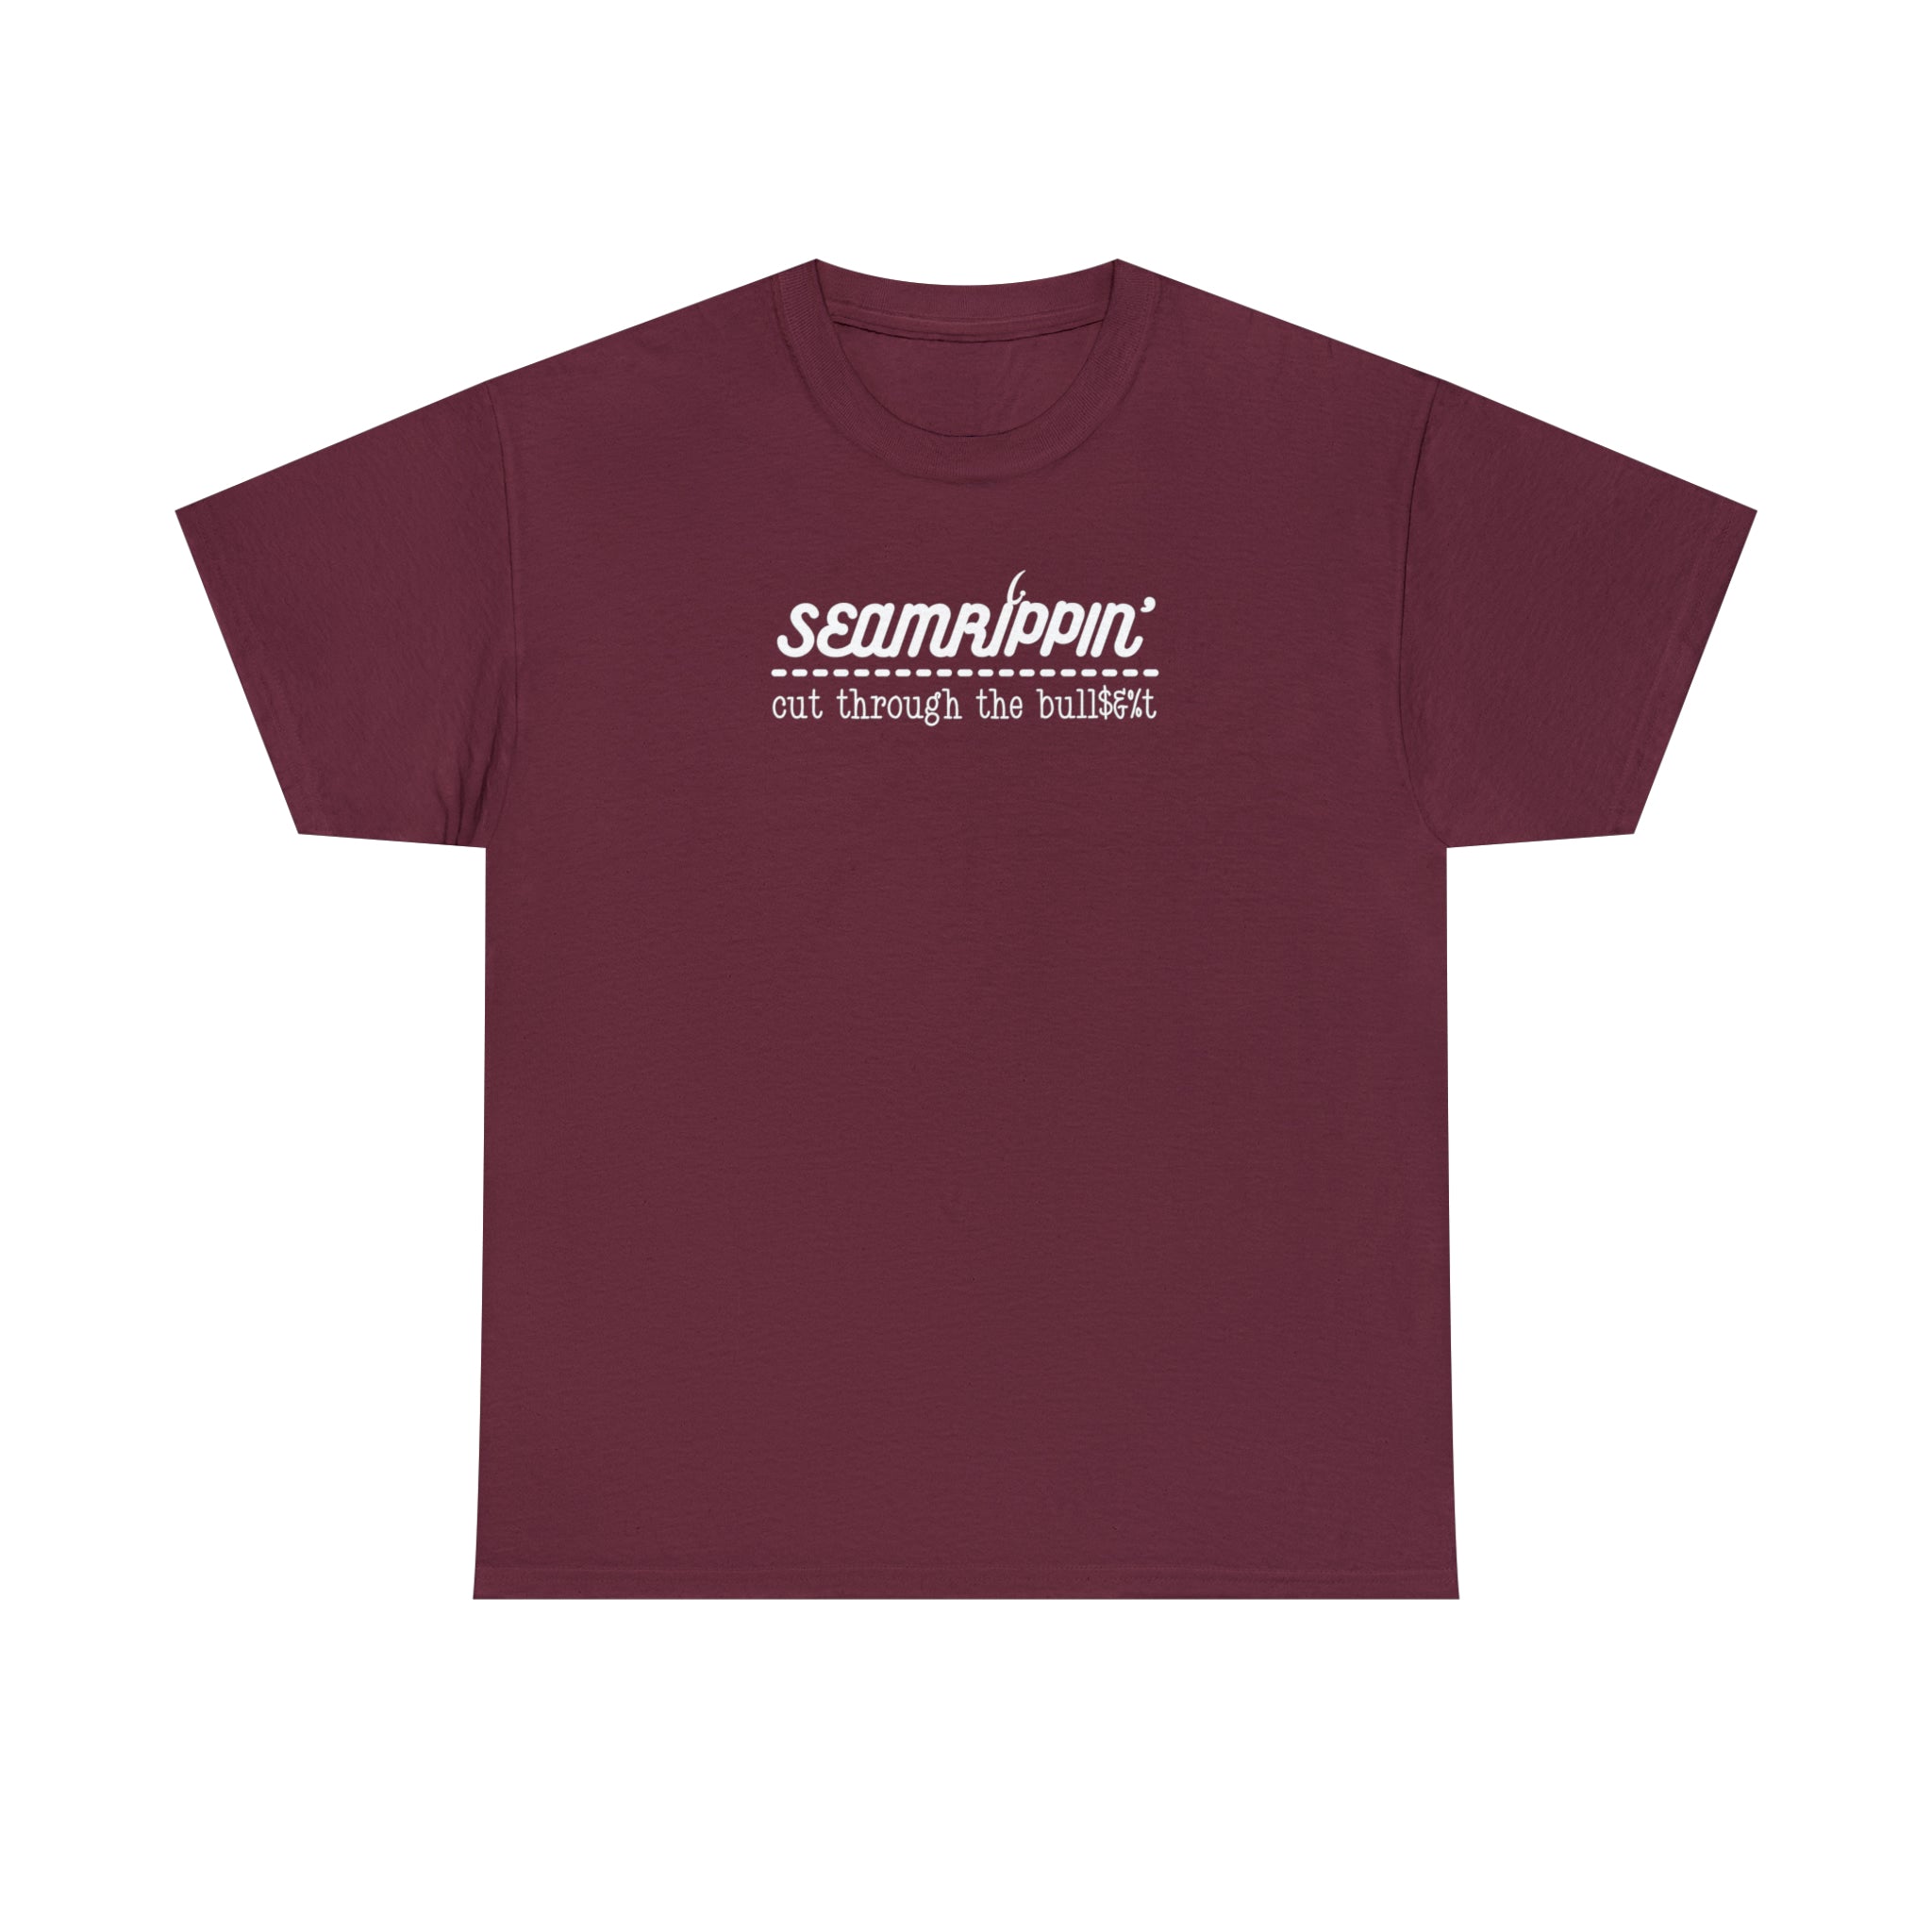 Seamrippin' T-shirt